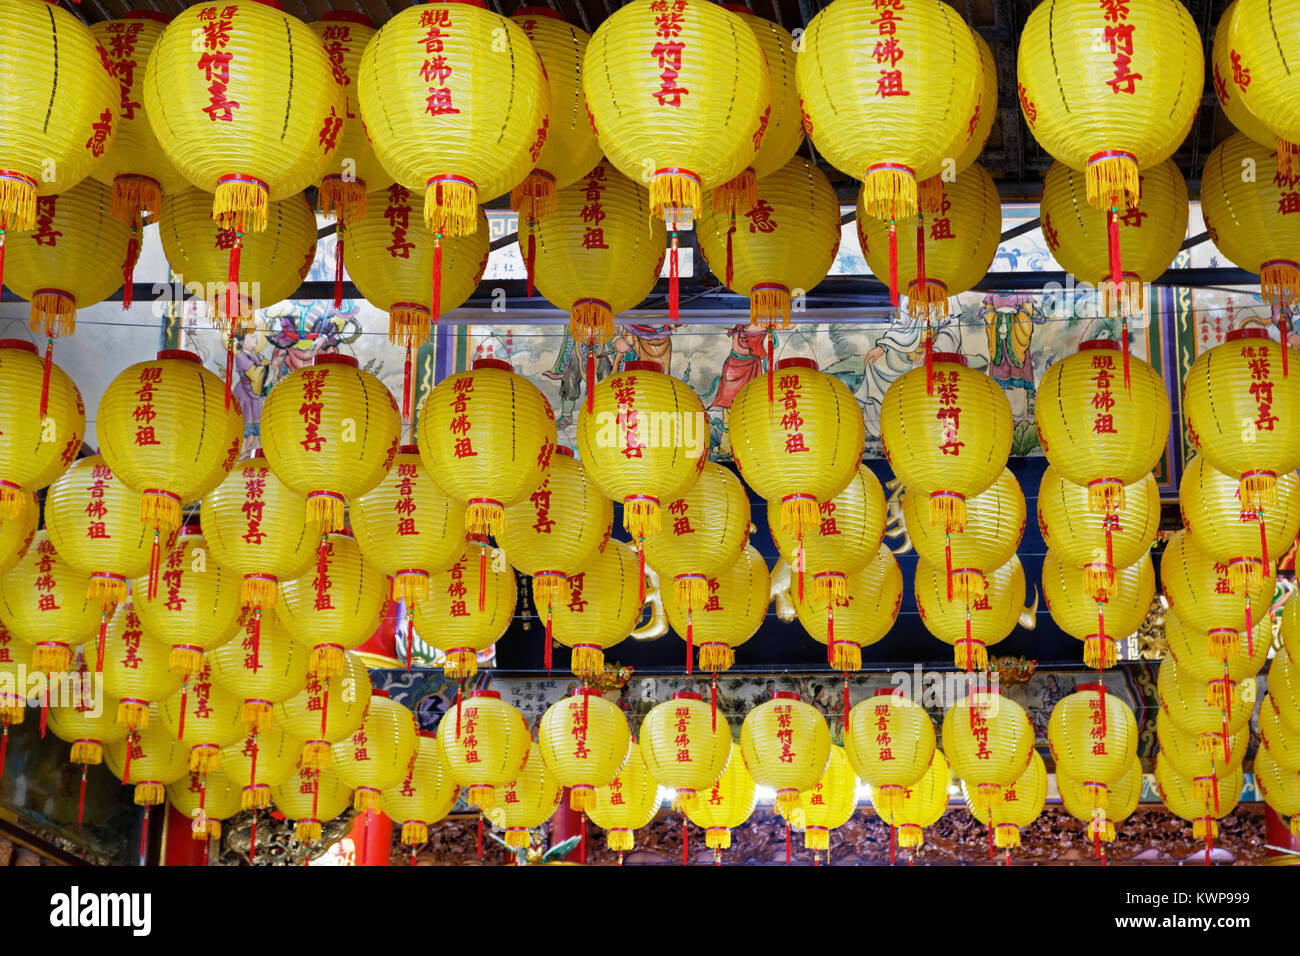 Belles lanternes jaune accroché dans le Temple Zizhu ou Purple Bamboo Temple, comme on le sait, fut construit il y a plus de 300 ans et a été rénové seve Banque D'Images